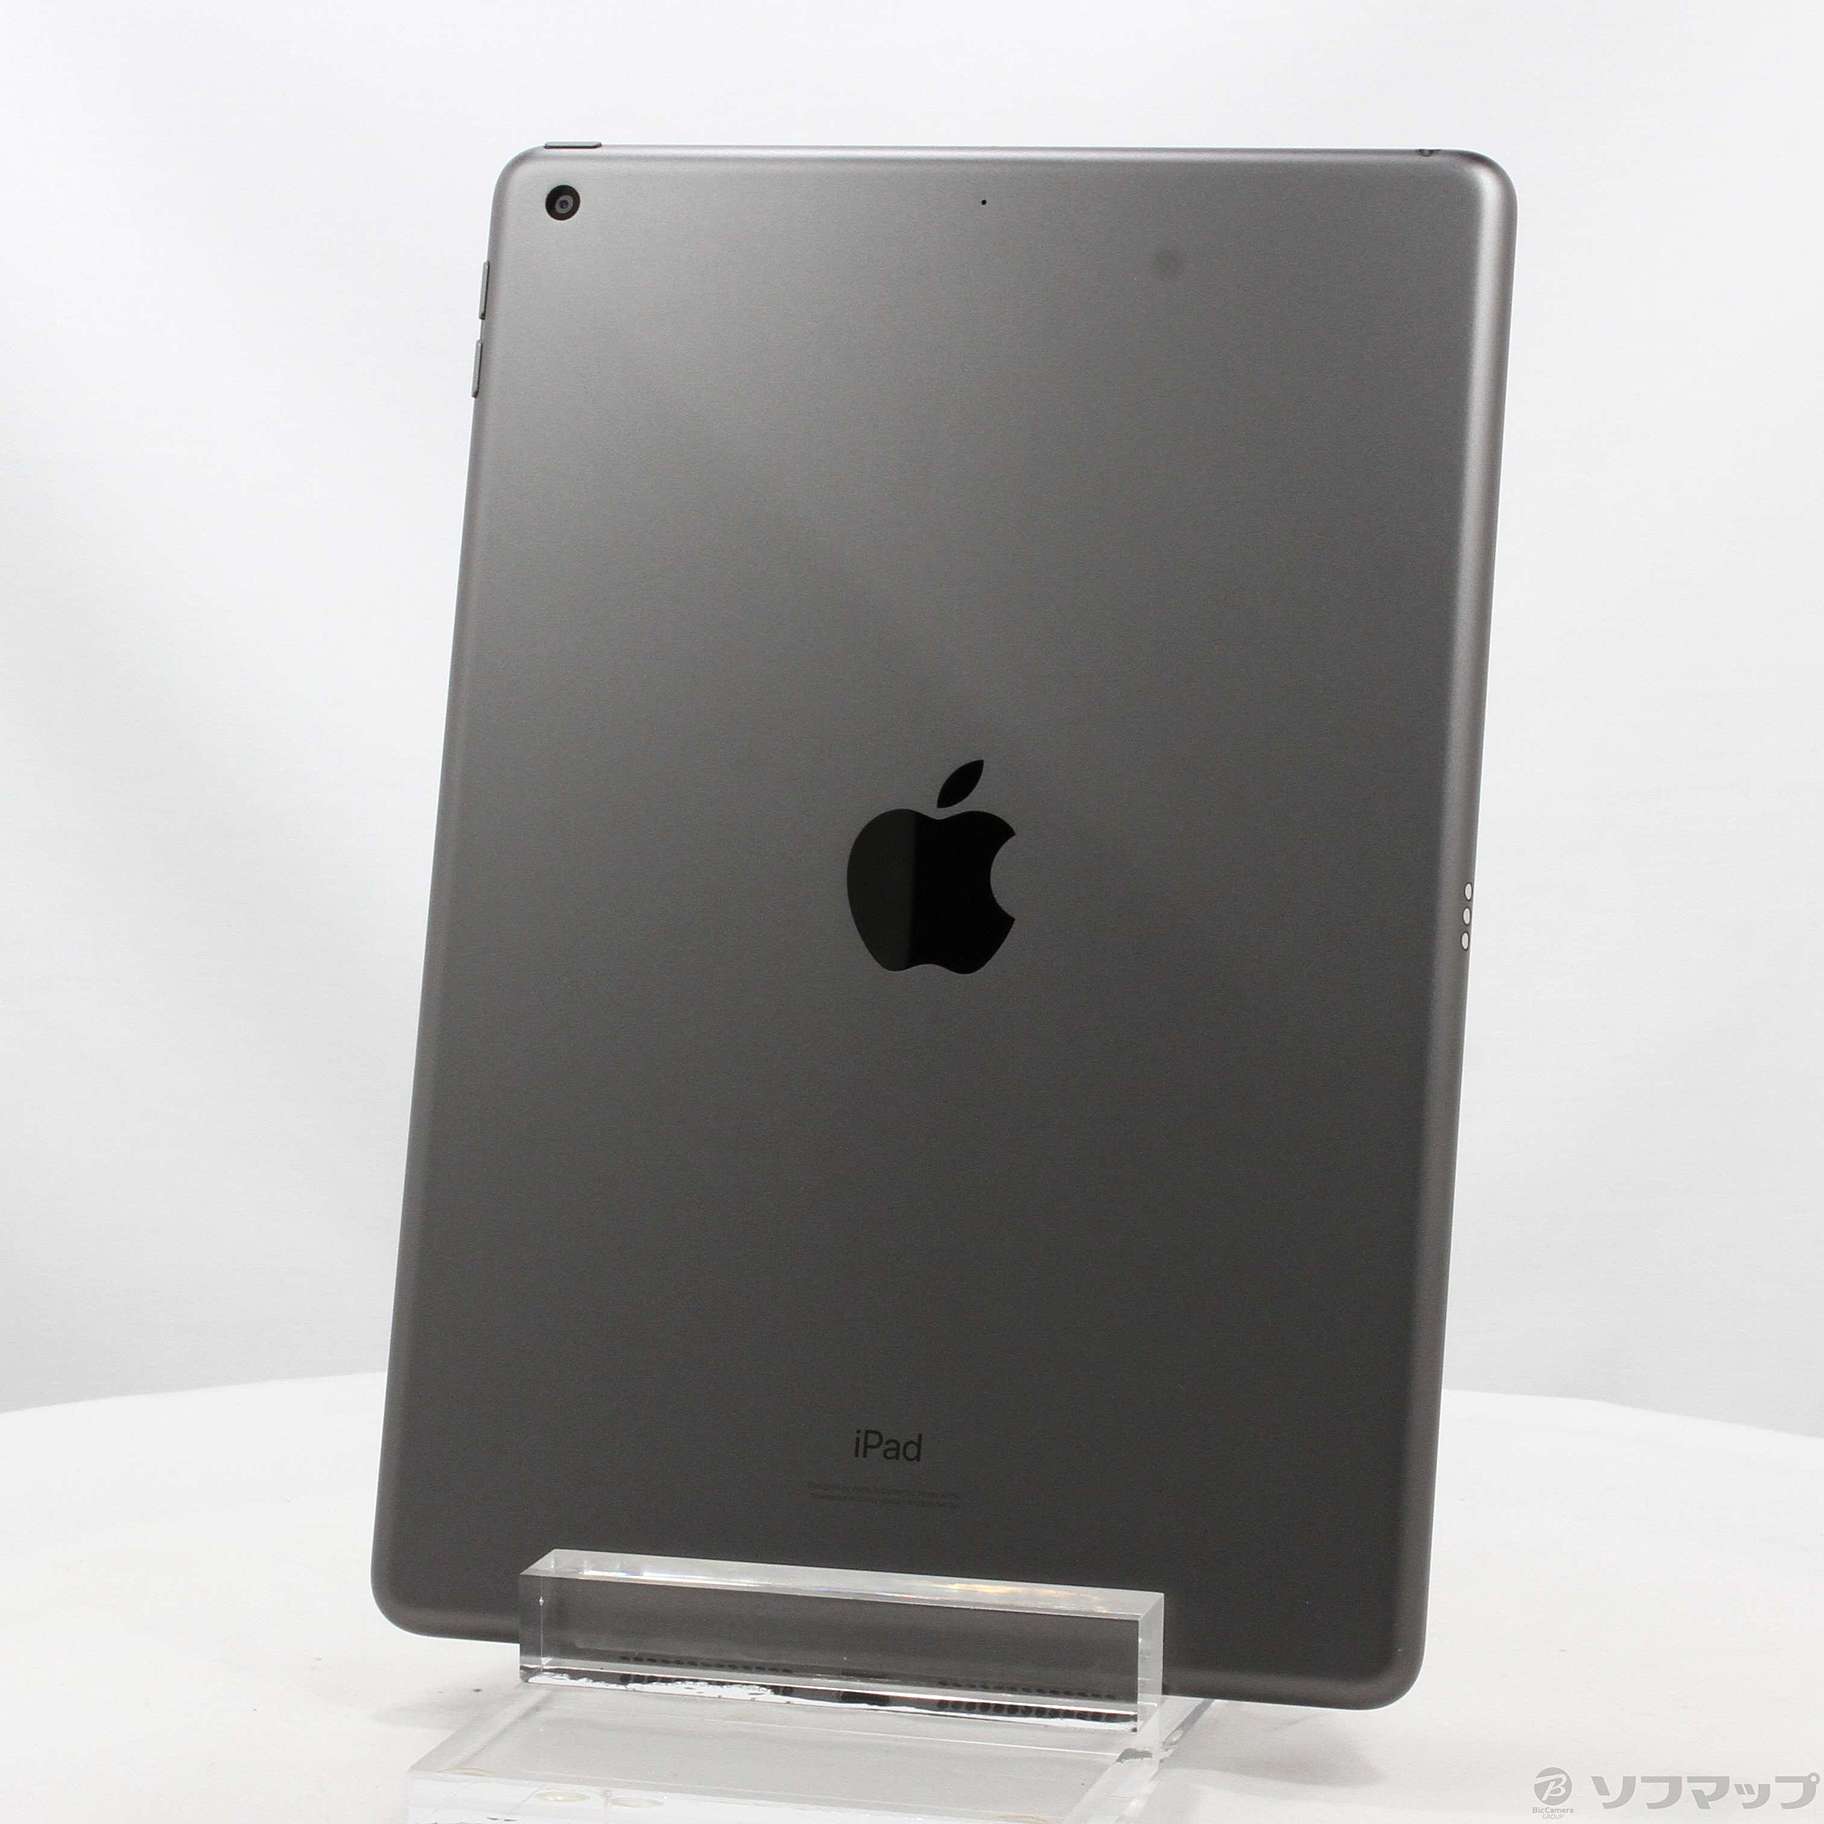 (中古)Apple iPad 第7世代 32GB スペースグレイ MW742LL/A Wi-Fi(371-ud)